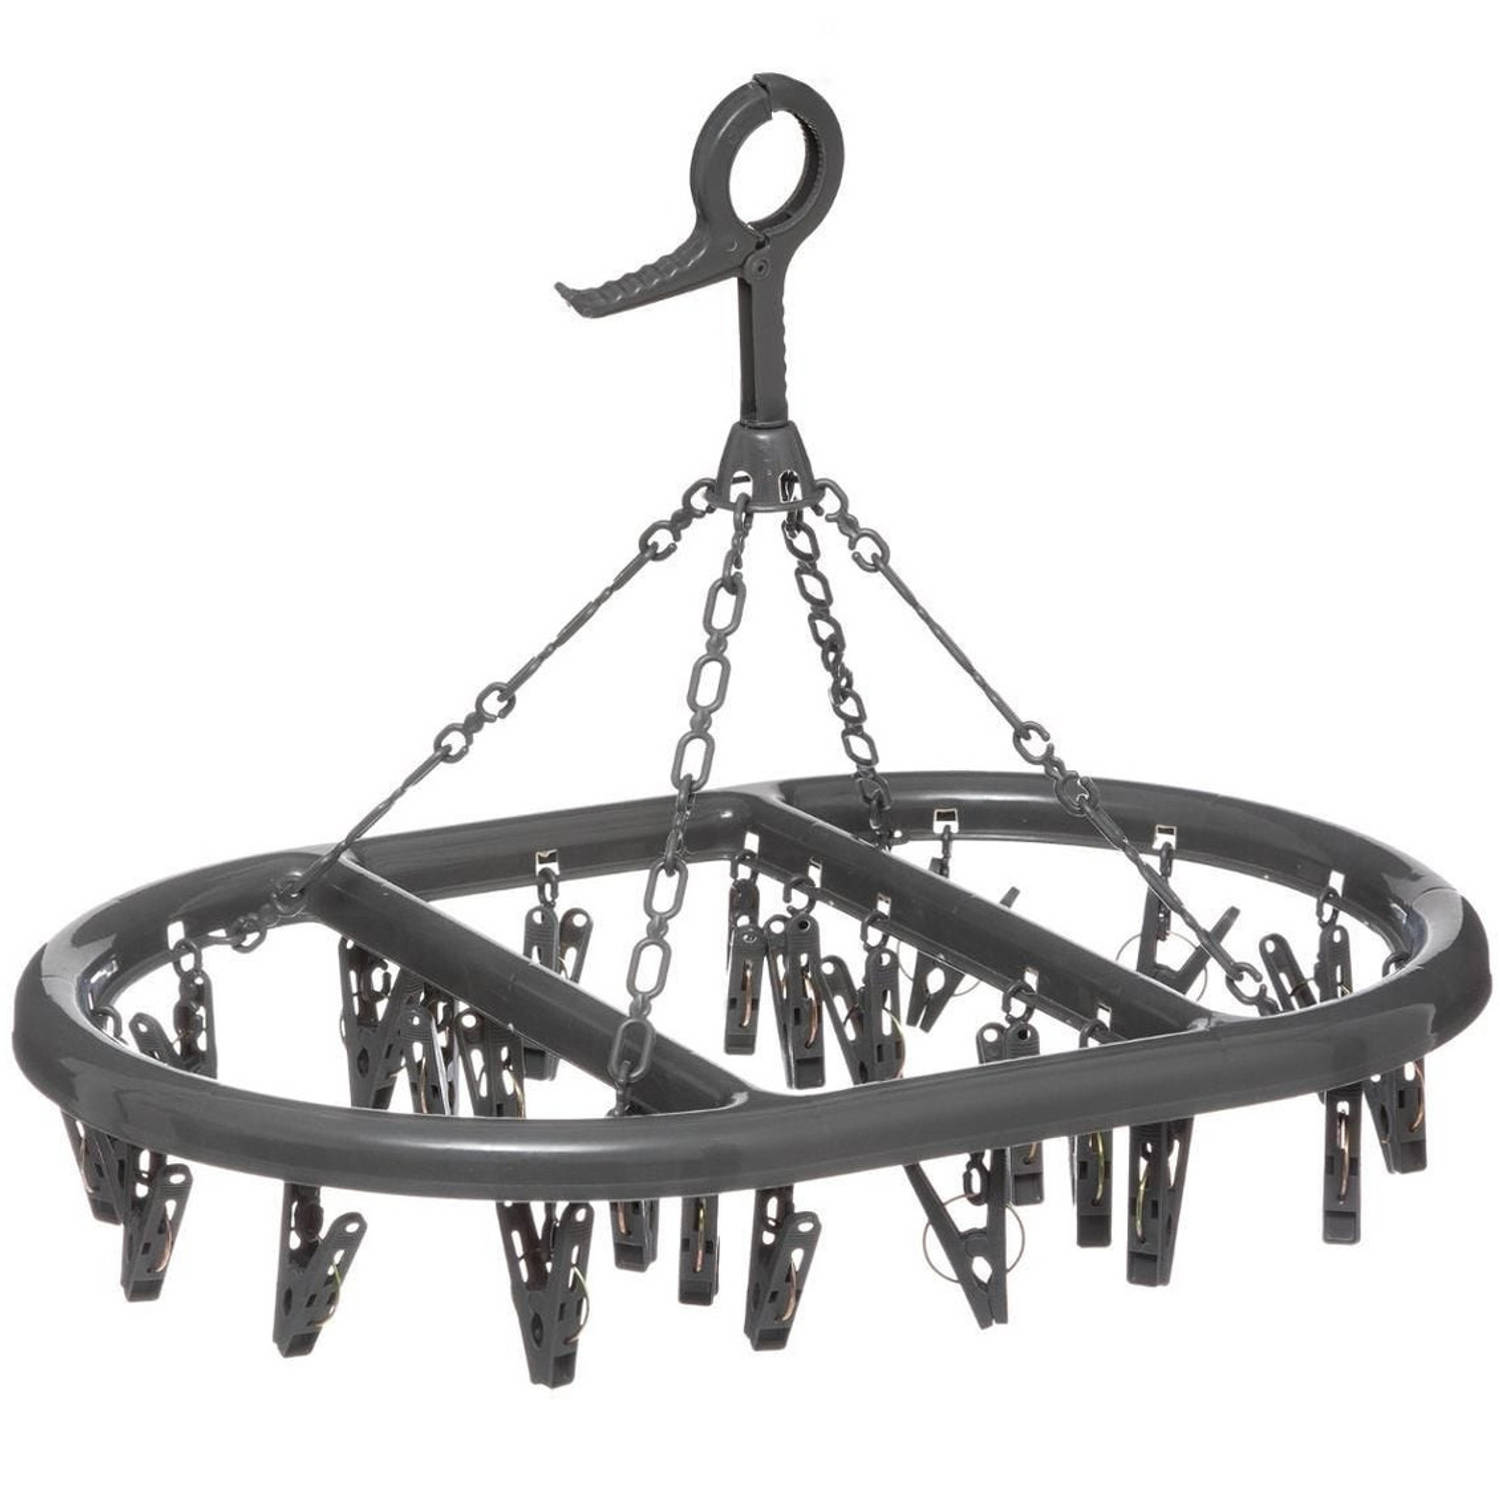 Droogcarrousel-droogmolen zwart met 24 knijpers 45 x 33 cm van kunststof Hangdroogrek